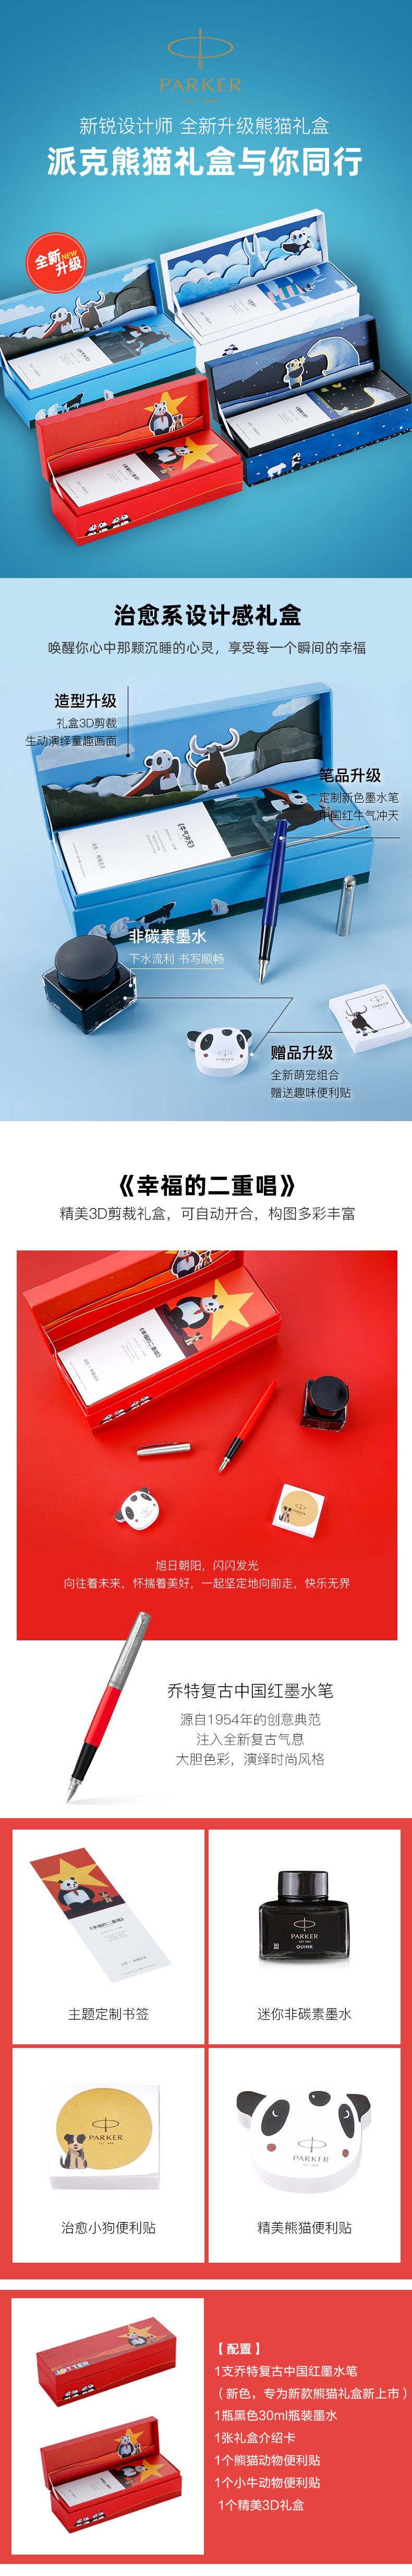 派克笔批发团购定制--派克新款熊猫复古 红色墨水笔礼盒